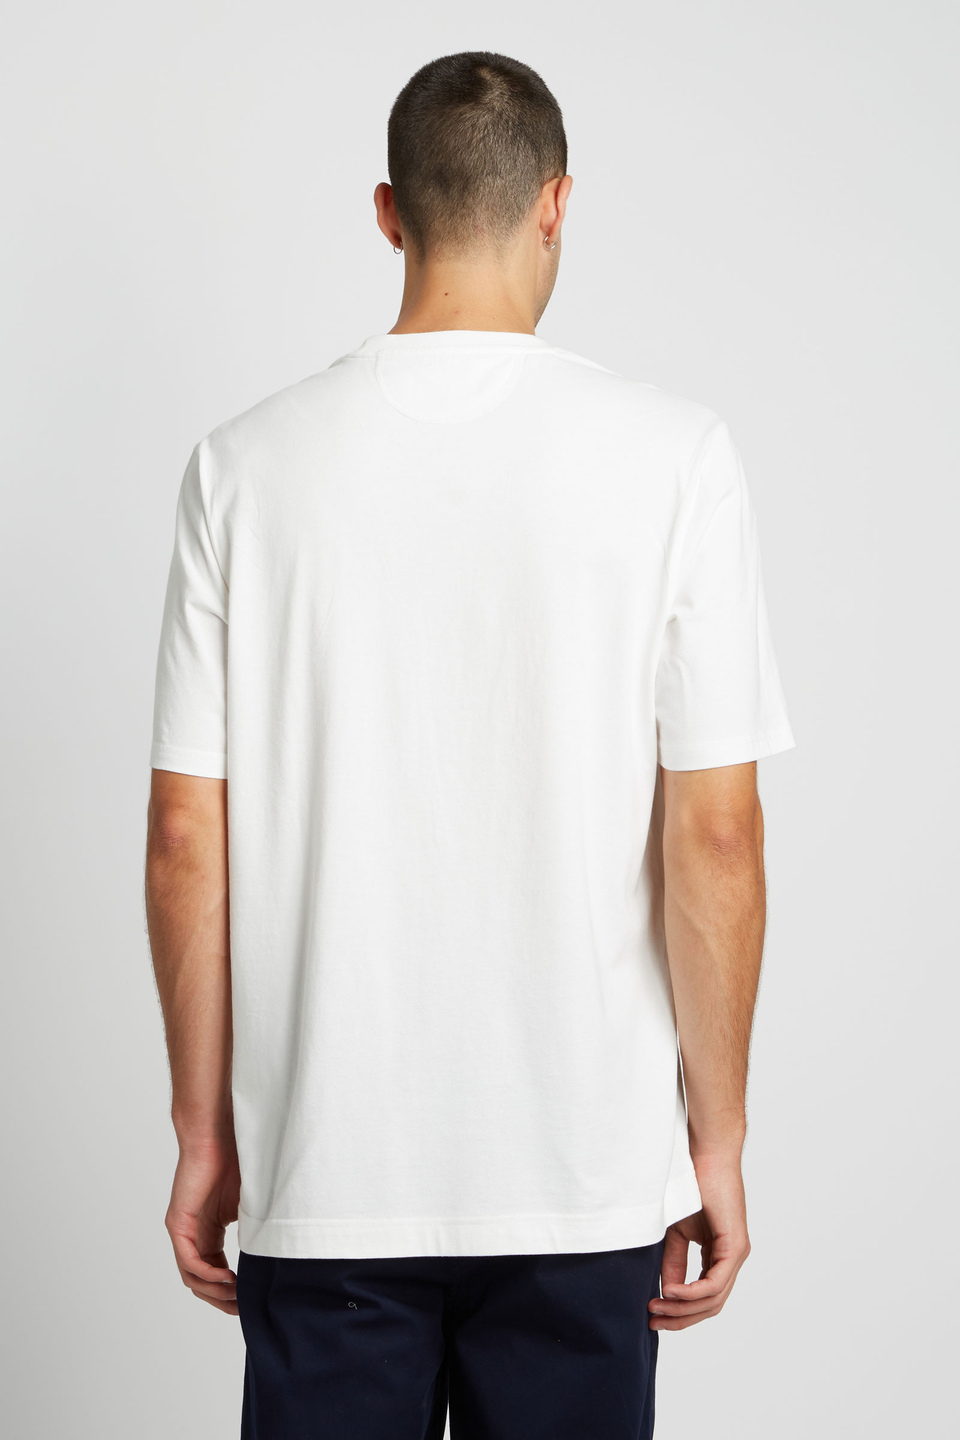 Herren-T-Shirt mit kurzem Arm aus 100 % Baumwolle, oversized | La Martina - Official Online Shop